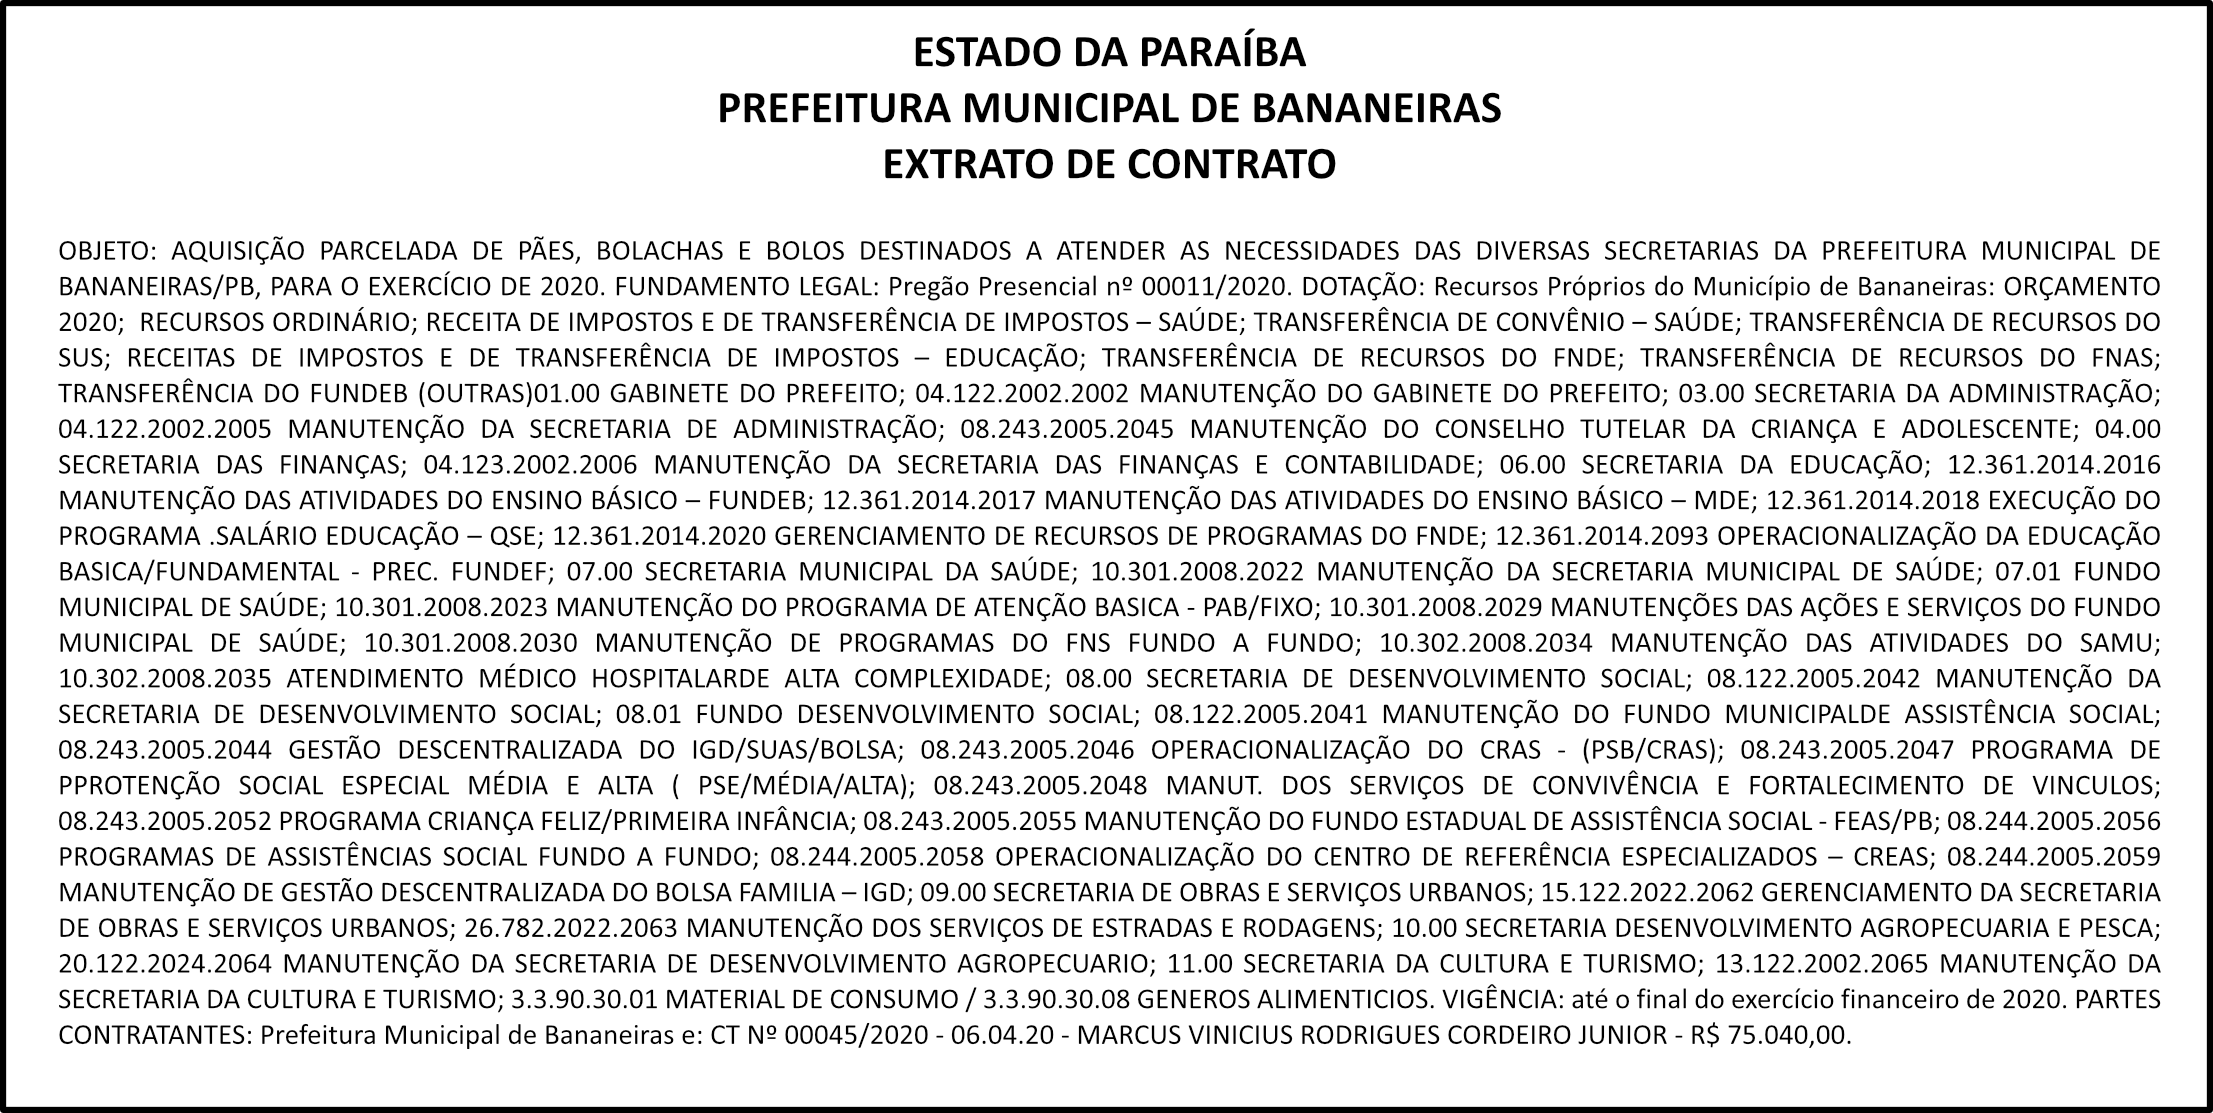 PREFEITURA MUNICIPAL DE BANANEIRAS – EXTRATO DE CONTRATO – PREGÃO nº 00011/2020